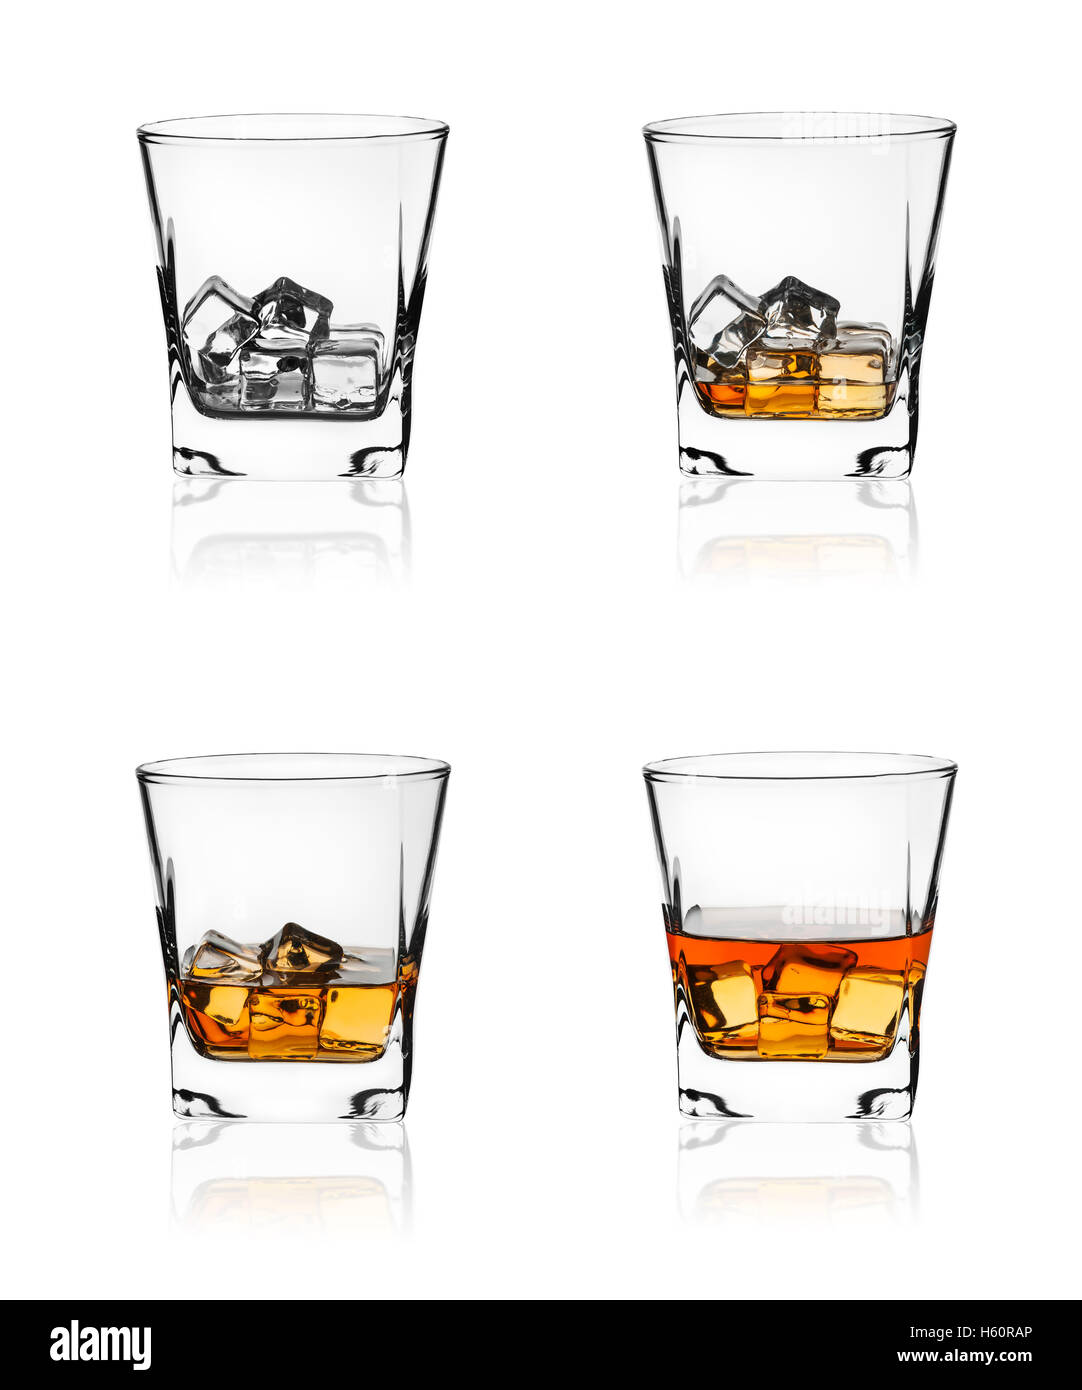 Verre de whisky écossais et de glace isolé sur fond blanc Banque D'Images